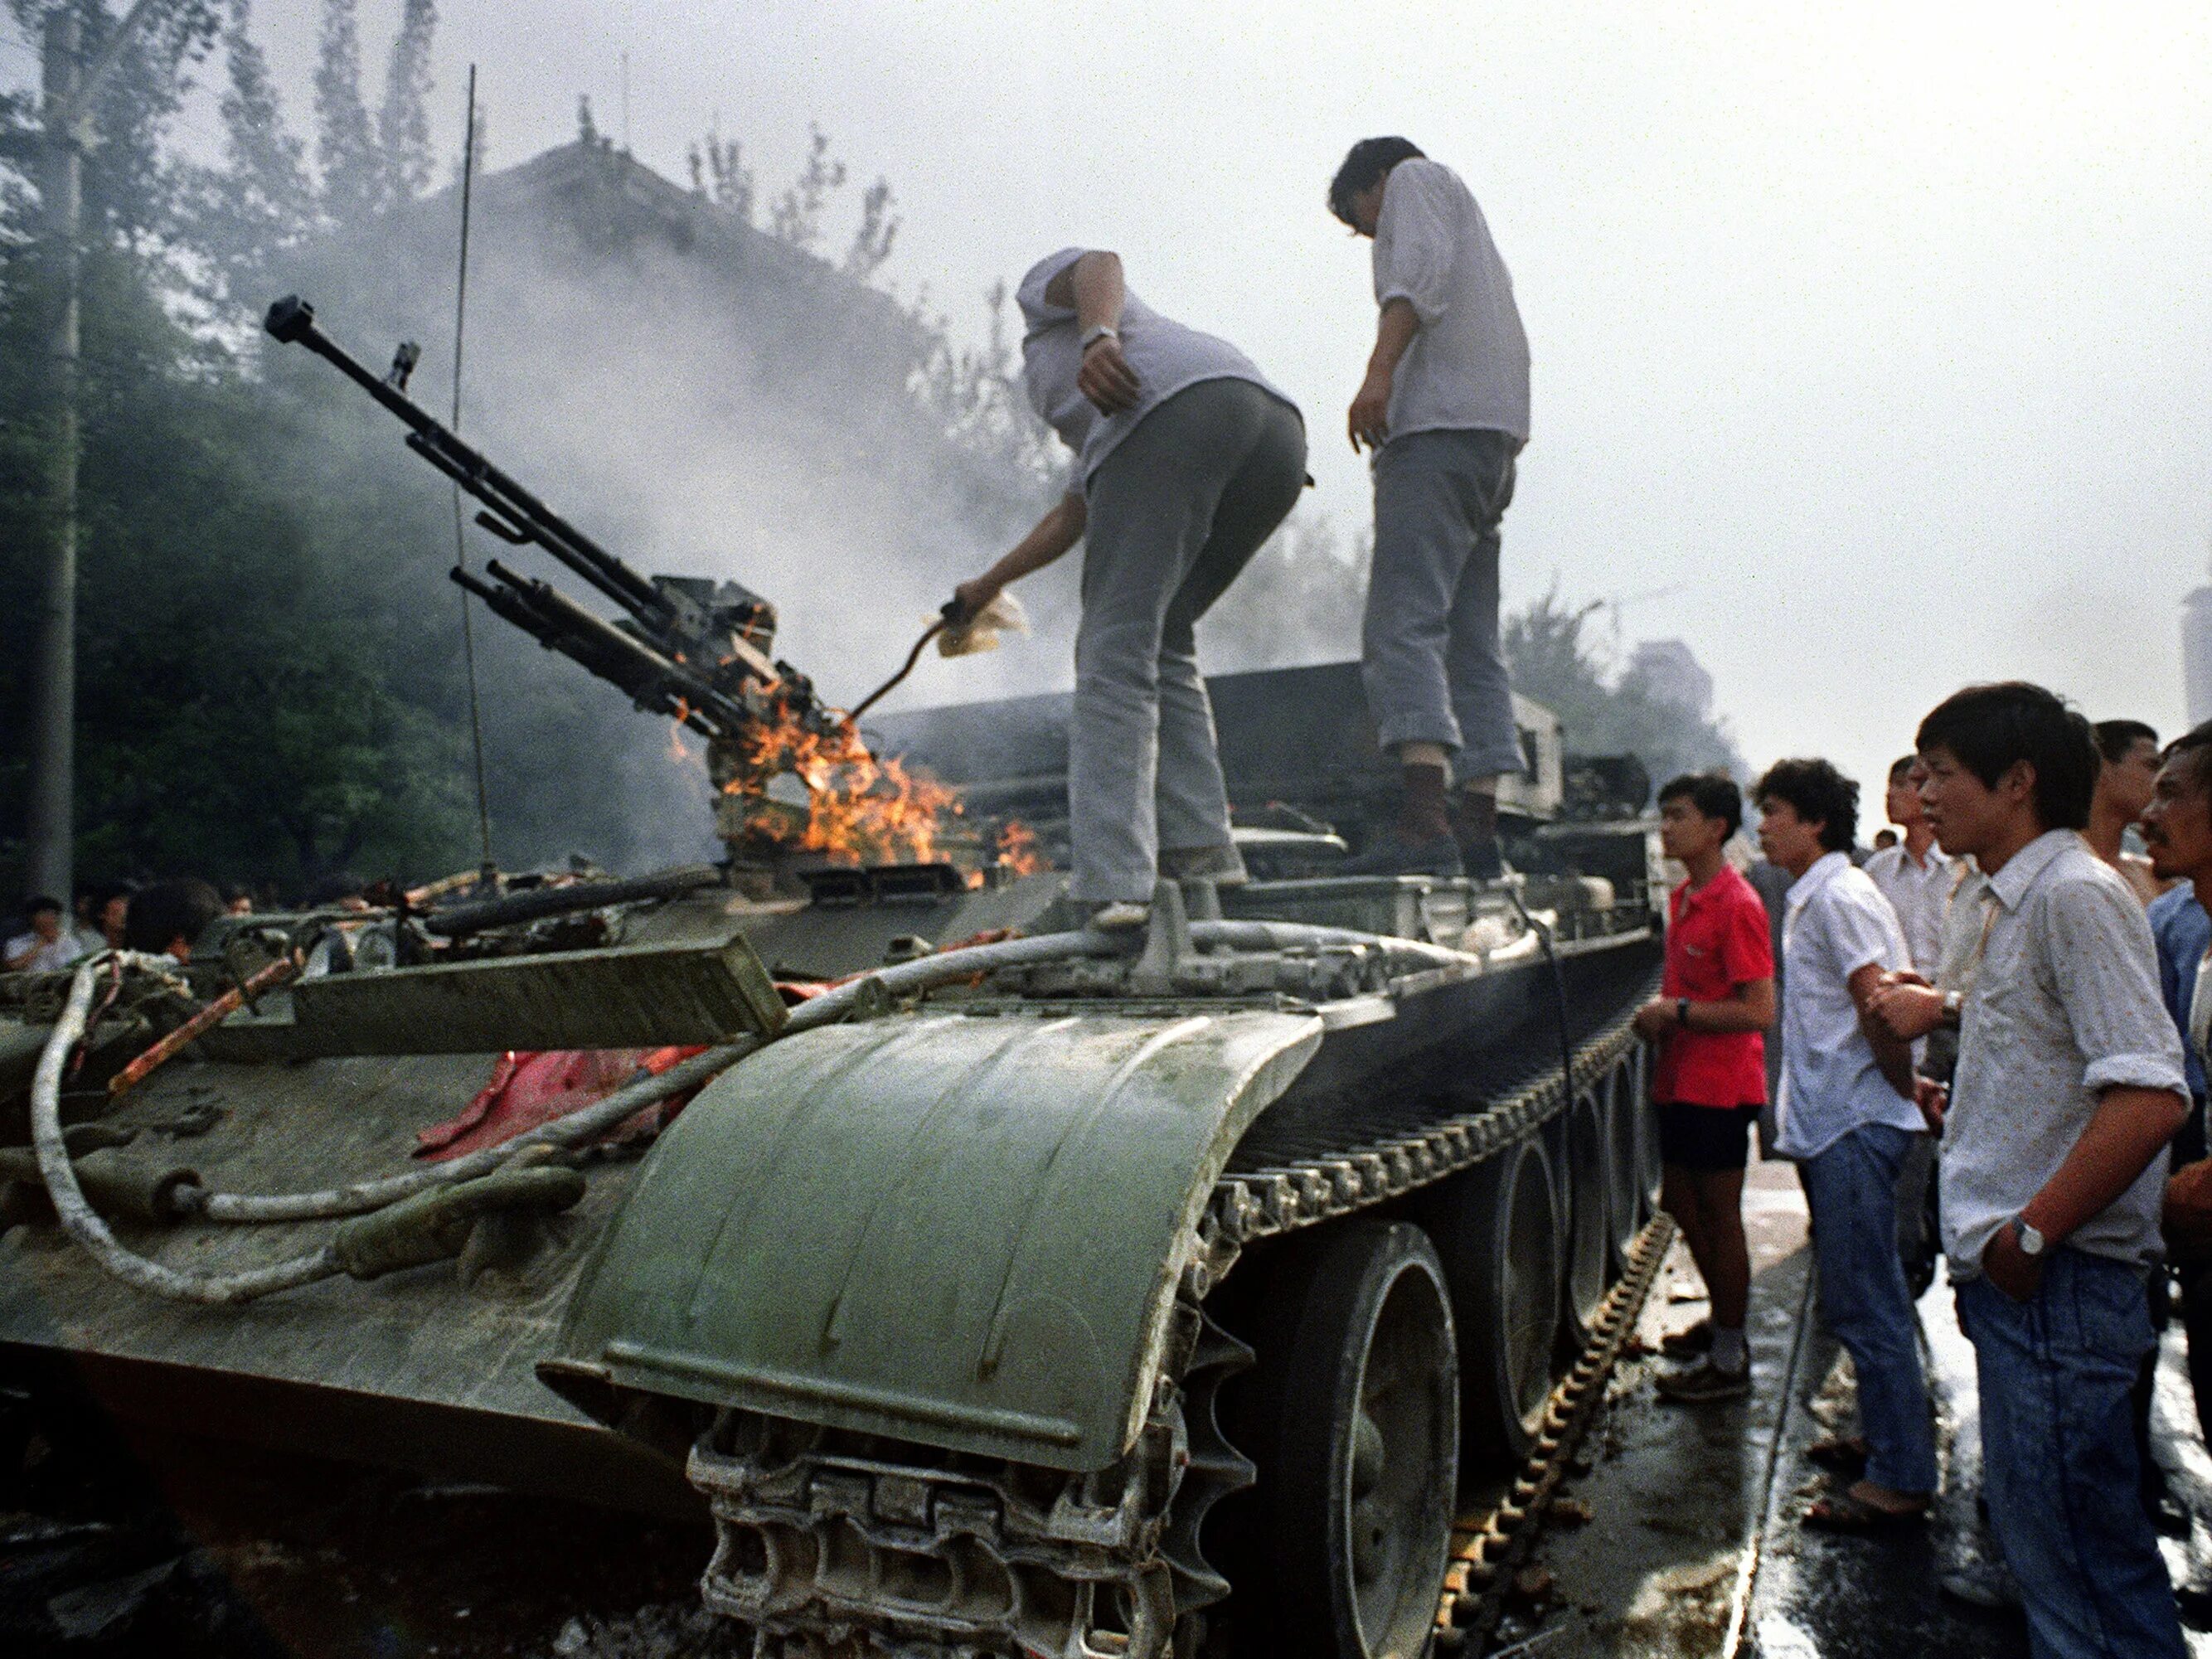 Ужасные события произошедшие в. Китай площадь Тяньаньмэнь 1989. 1989 Год Китай площадь Тяньаньмэнь. Тяньаньмэнь 4 июня 1989 года. Китай 1989 площадь Тяньаньмэнь танки.